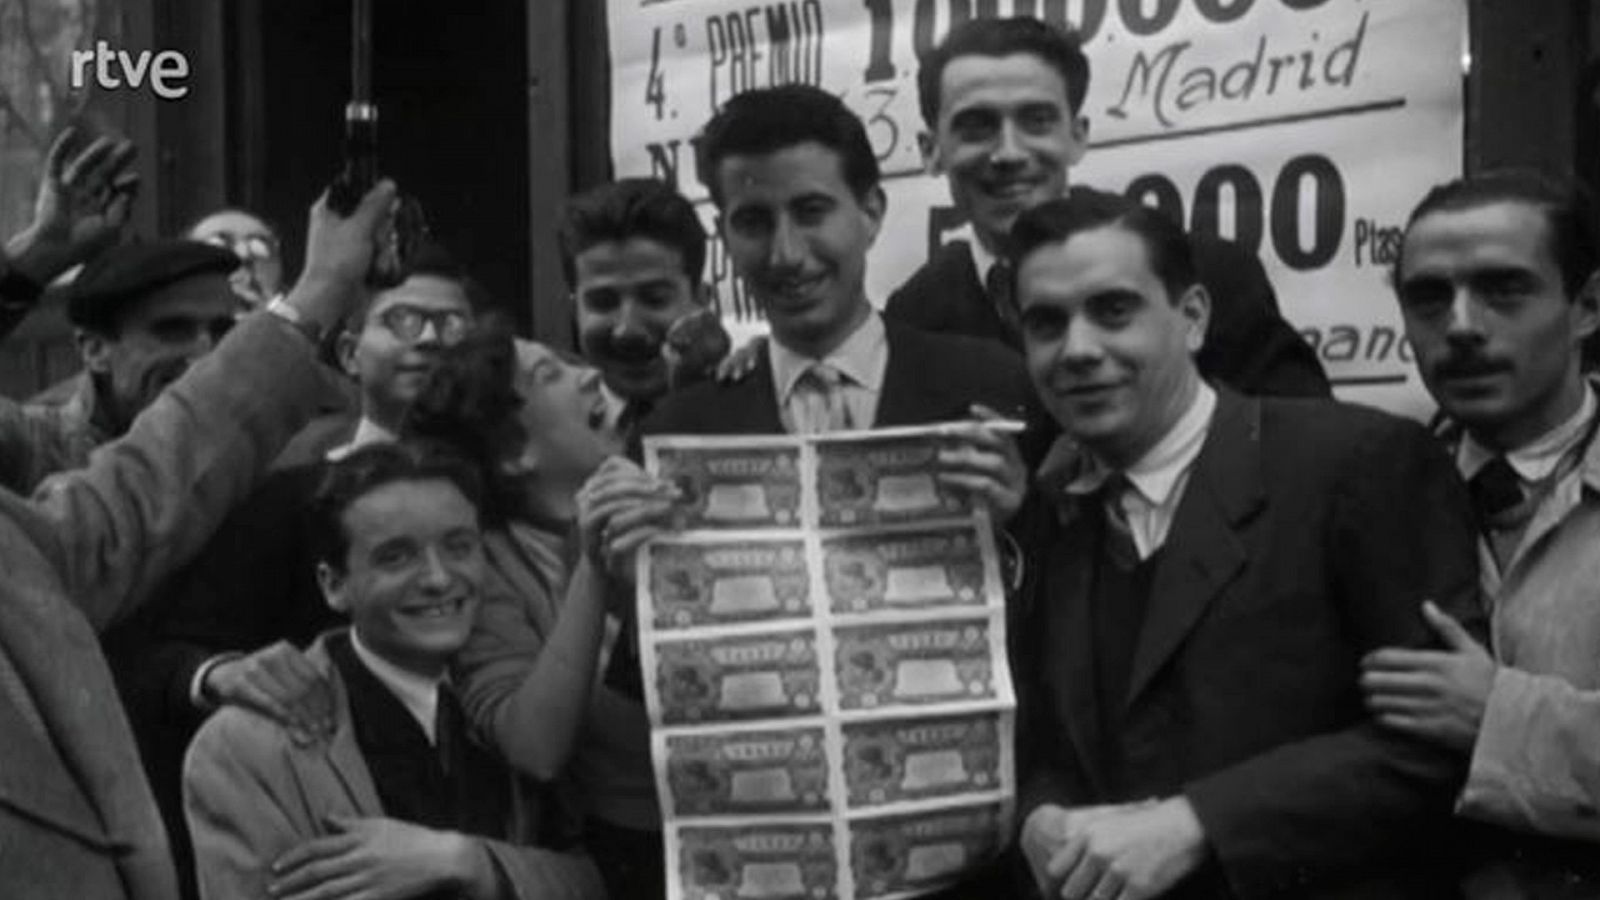 Nodo - Lotería de Navidad, Barcelona 1950